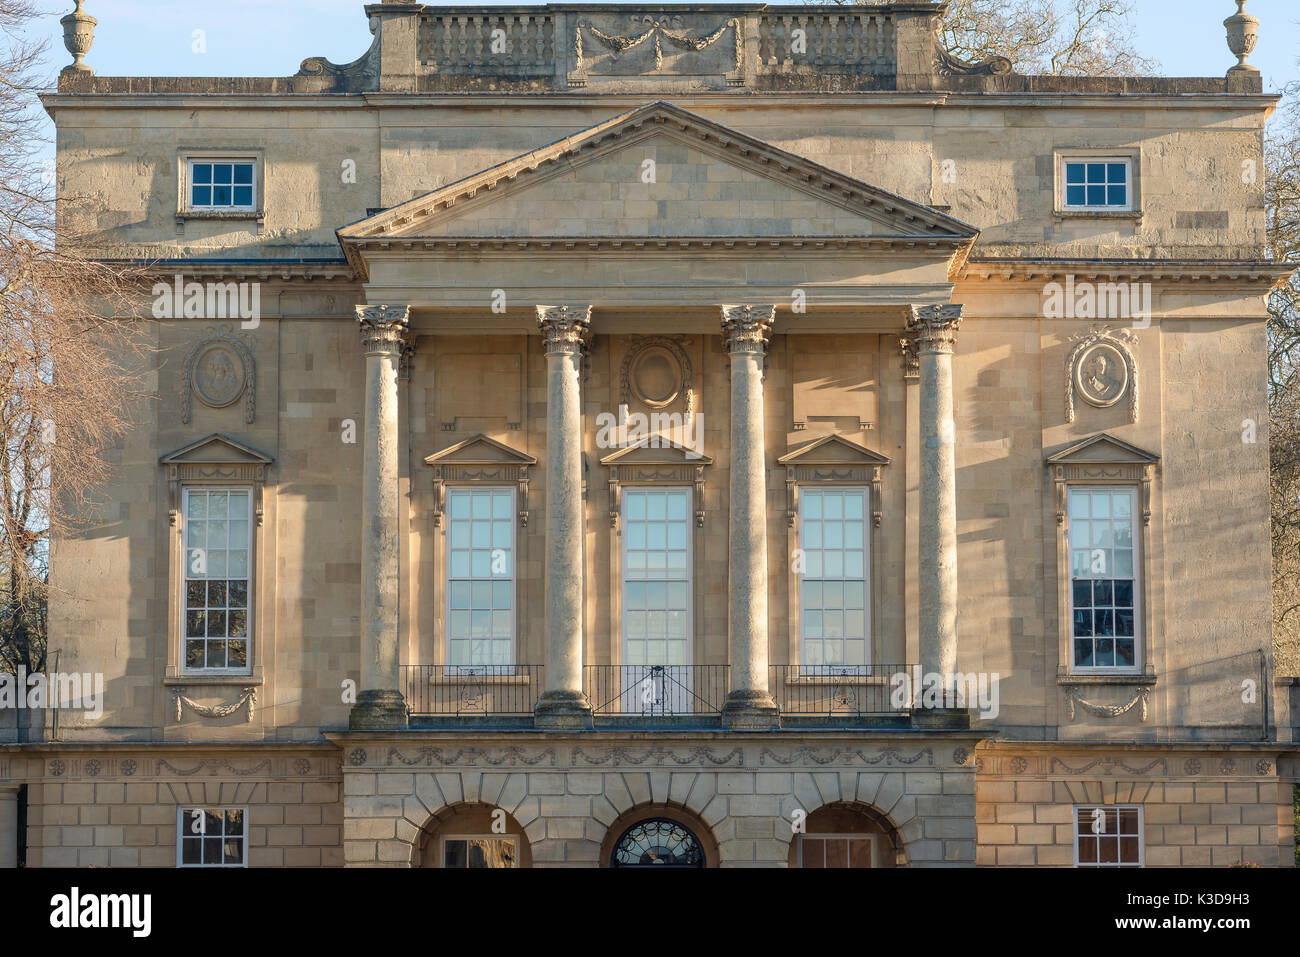 Musée de la ville de Bath, frontale détail du Holburne Museum dans la baignoire, un grand bâtiment de style palladien géorgien qui abrite une importante collection d'art. Banque D'Images